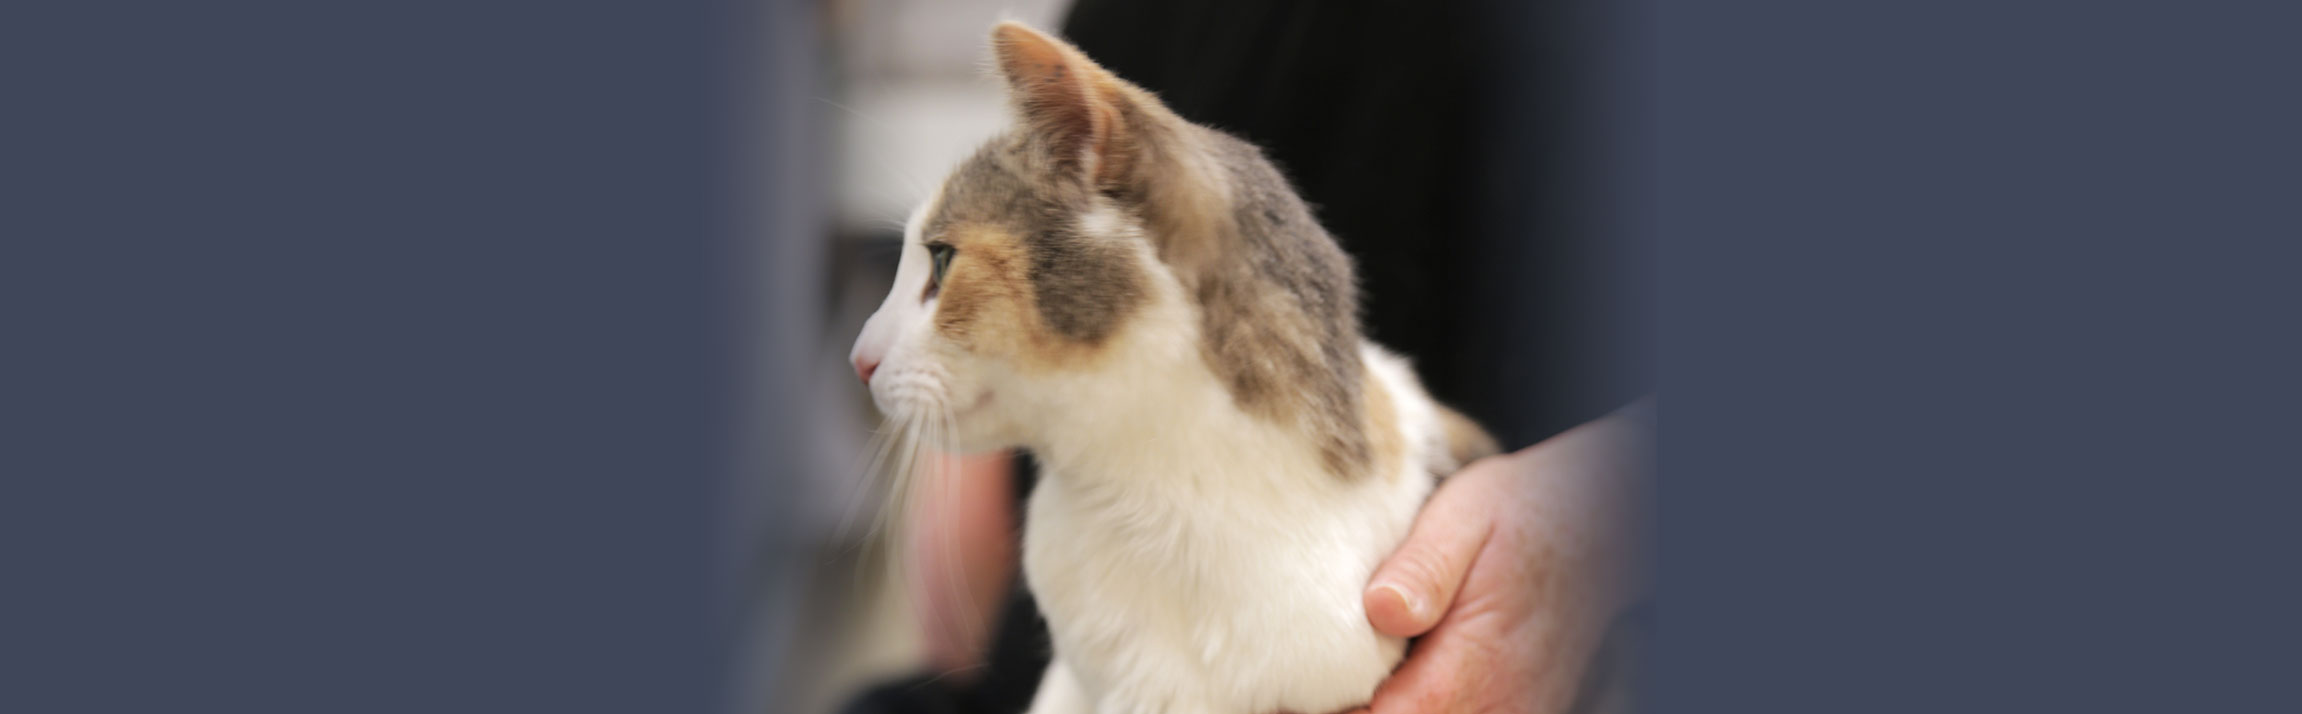 Inflammatory Bowel Disease (IBD) in Cats